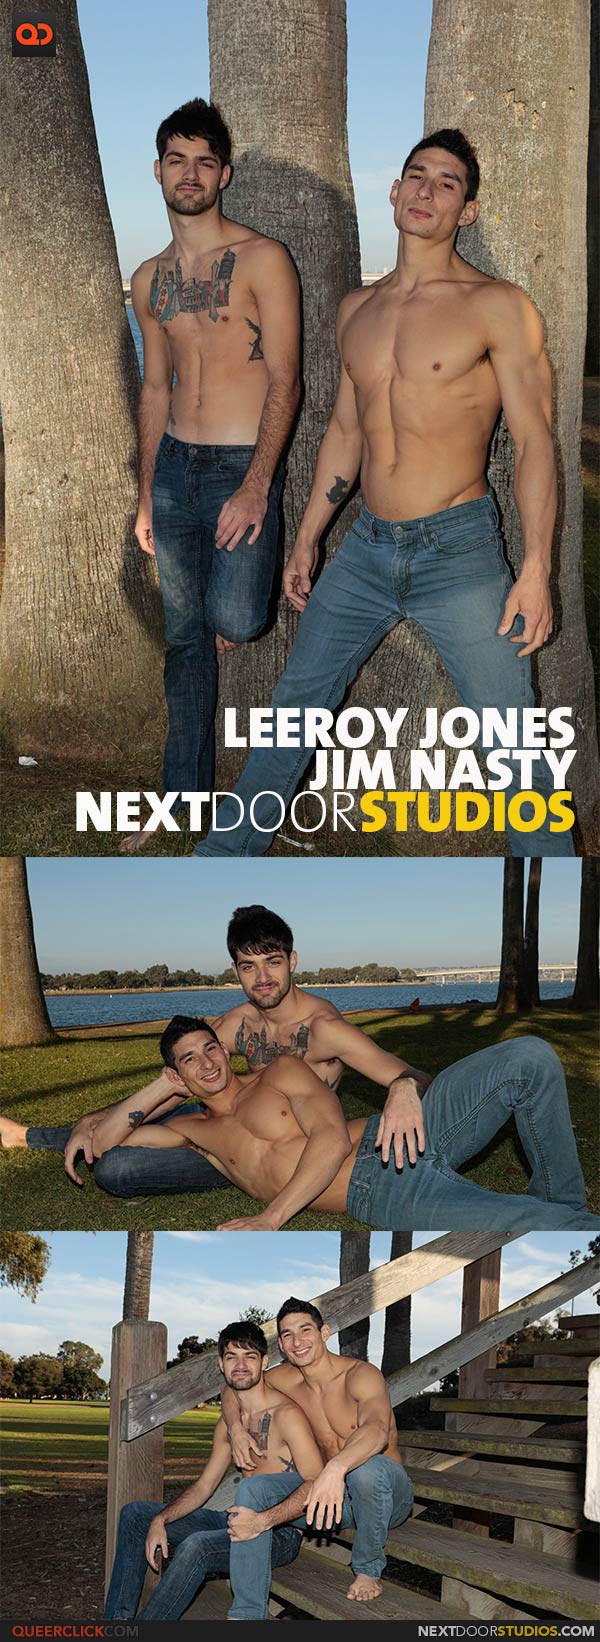 NextDoorStudios: Jim Nasty and Leeroy Jones